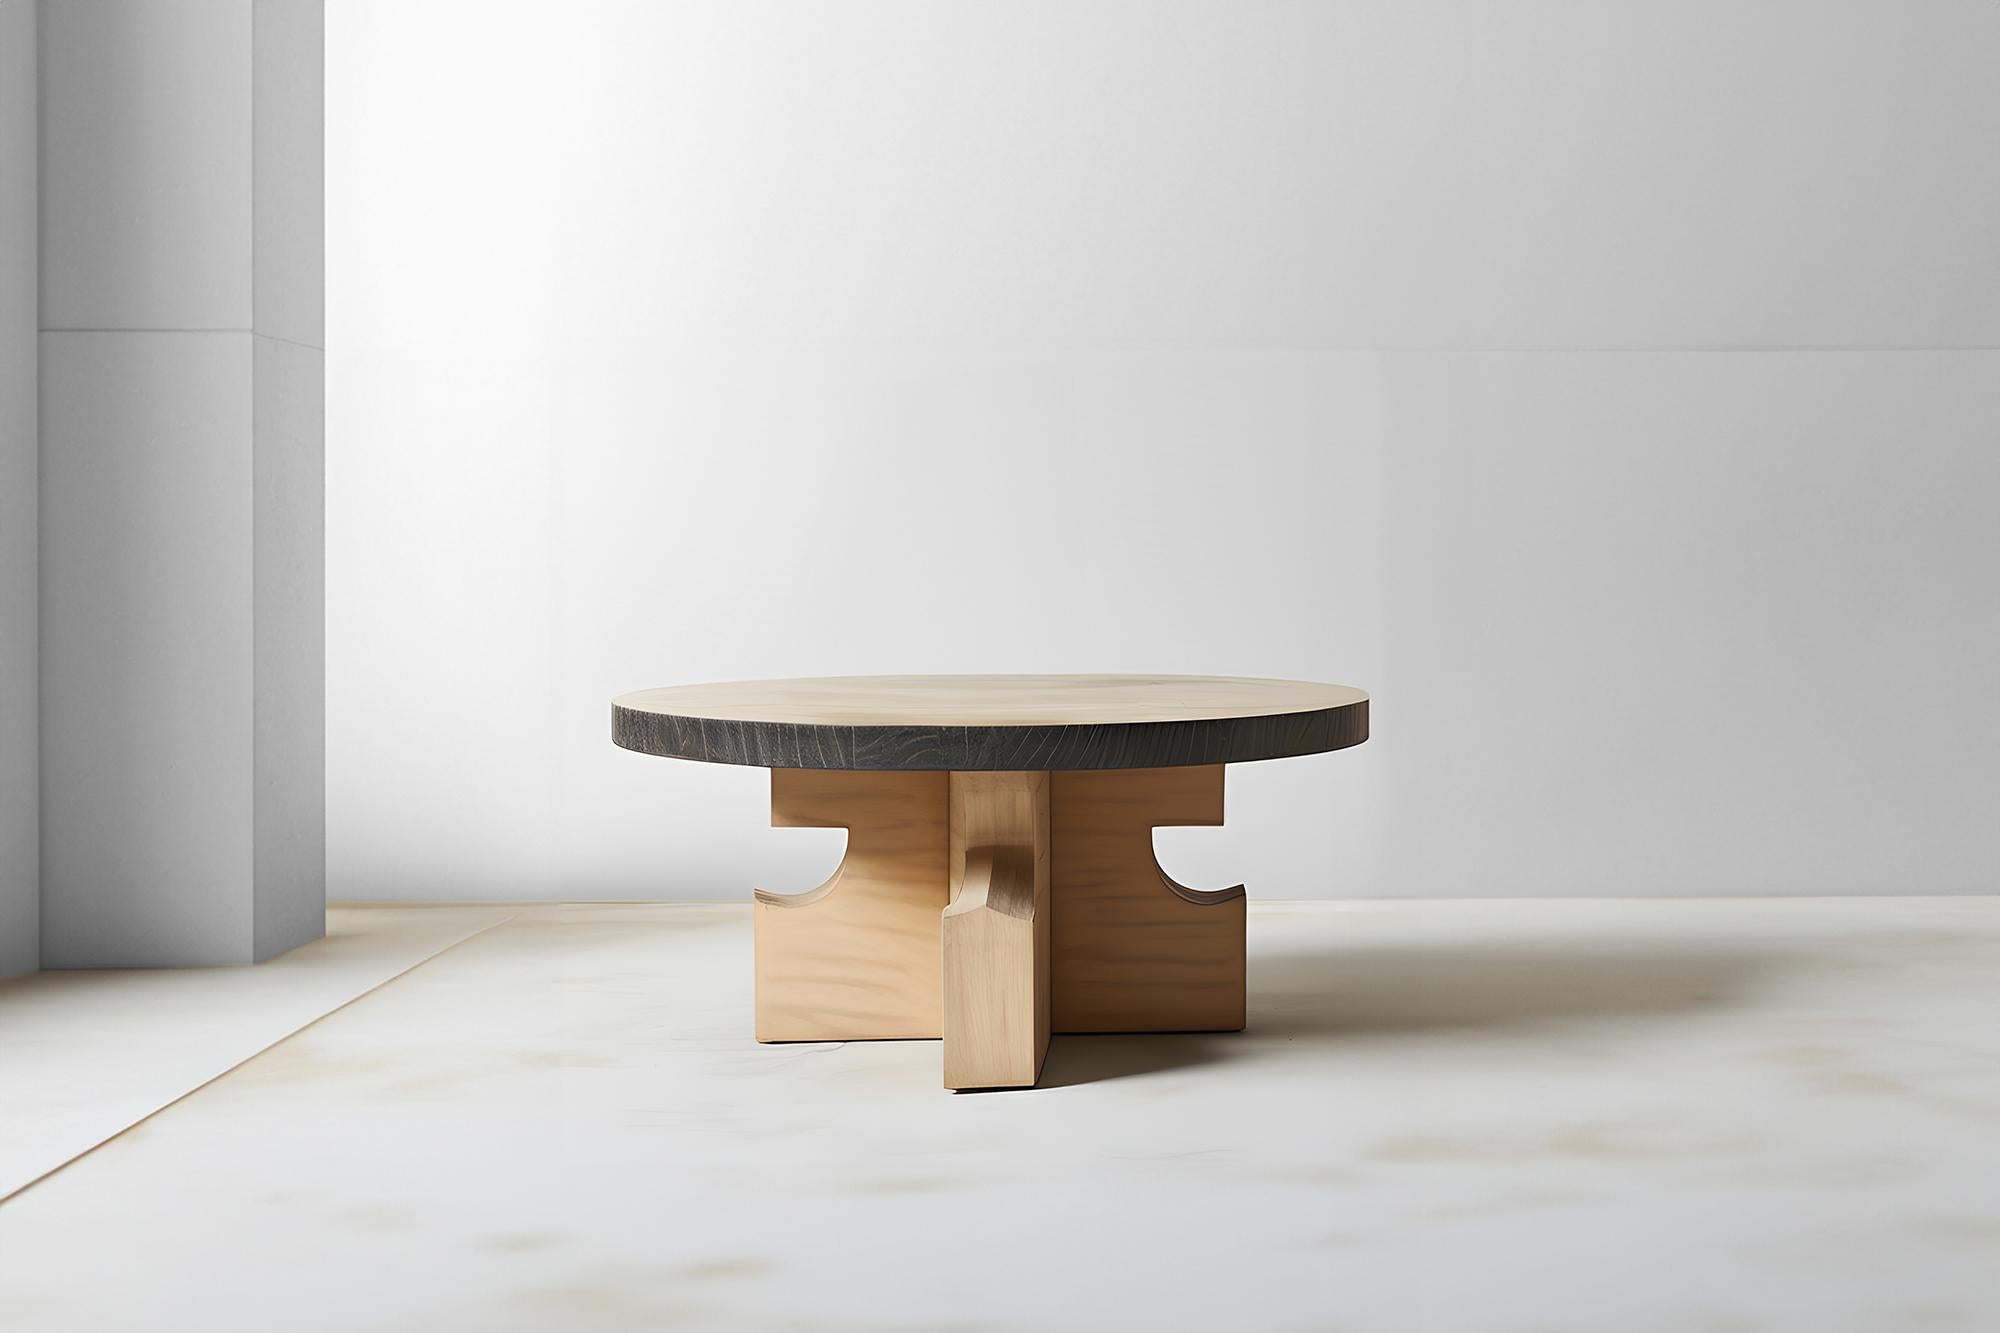 Table ronde en Oak Contemporary 63 Flair géométrique, look contemporain par NONO

Table basse sculpturale en bois massif avec une finition naturelle à base d'eau ou teintée en noir. En raison de la nature du processus de production, chaque pièce